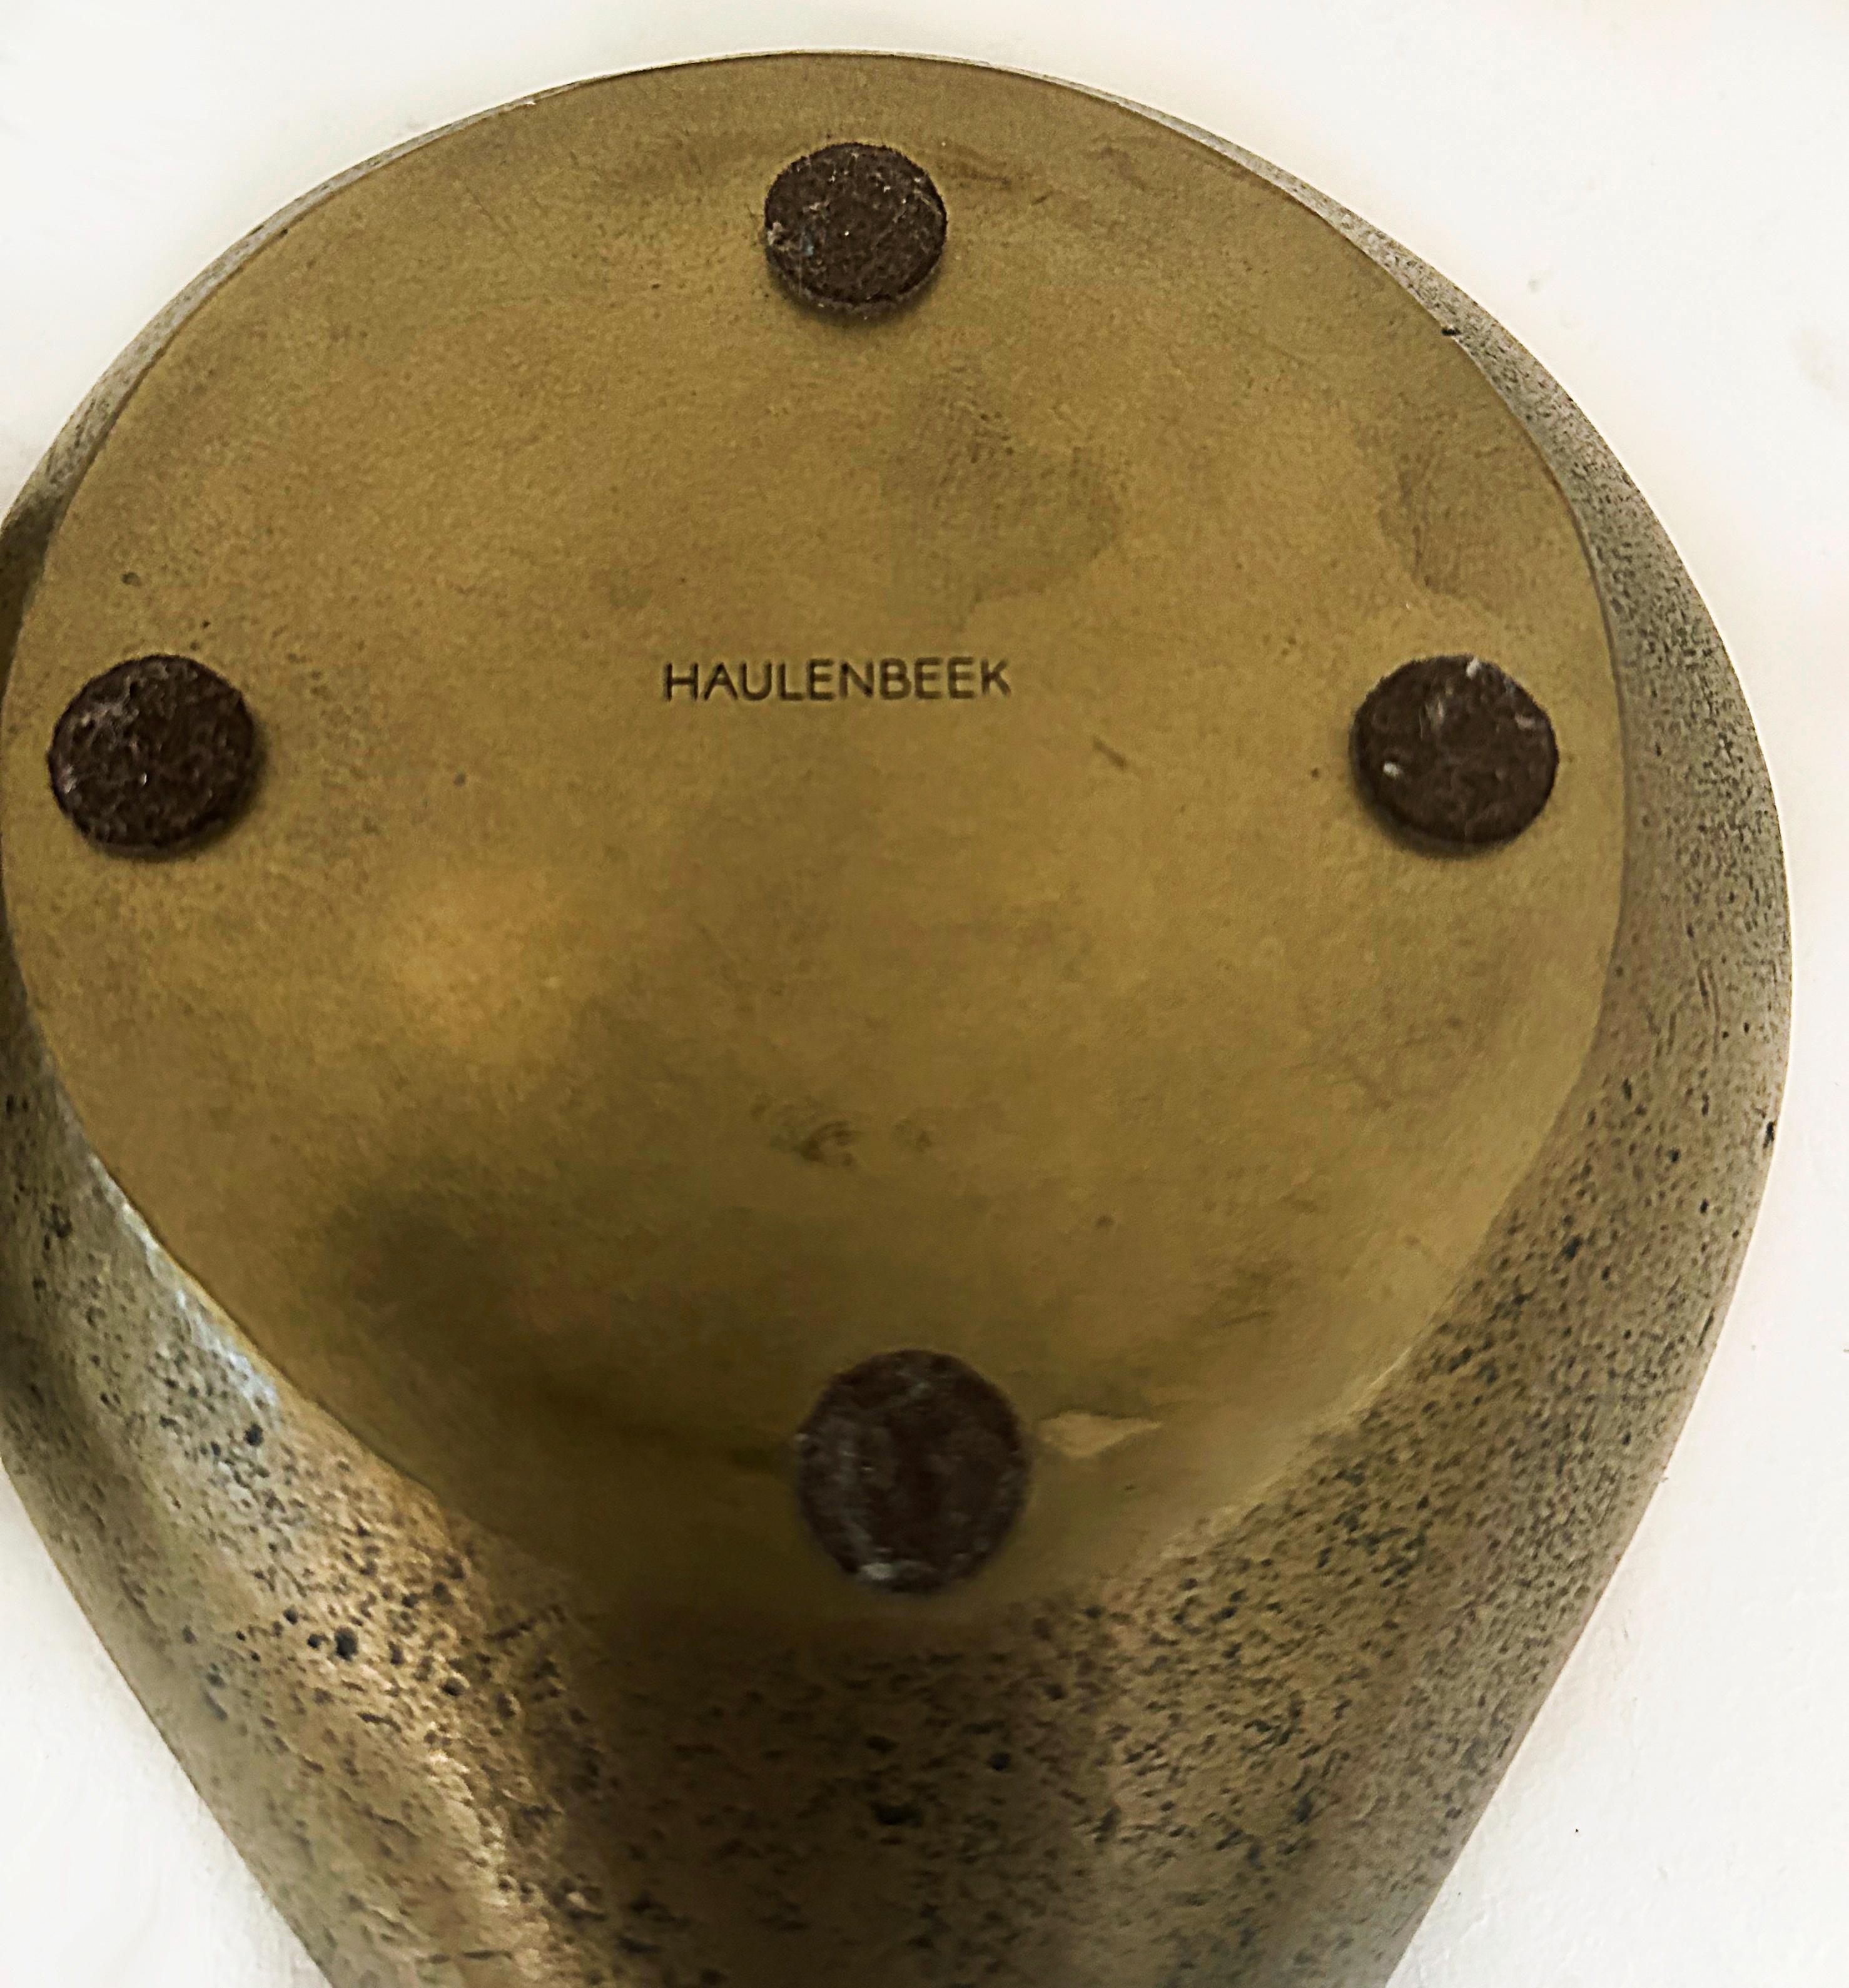 Steven Haulenbeek Ice Cast Bronze Tear-Drop Bowls, Heavy, Substantial Pair For Sale 6